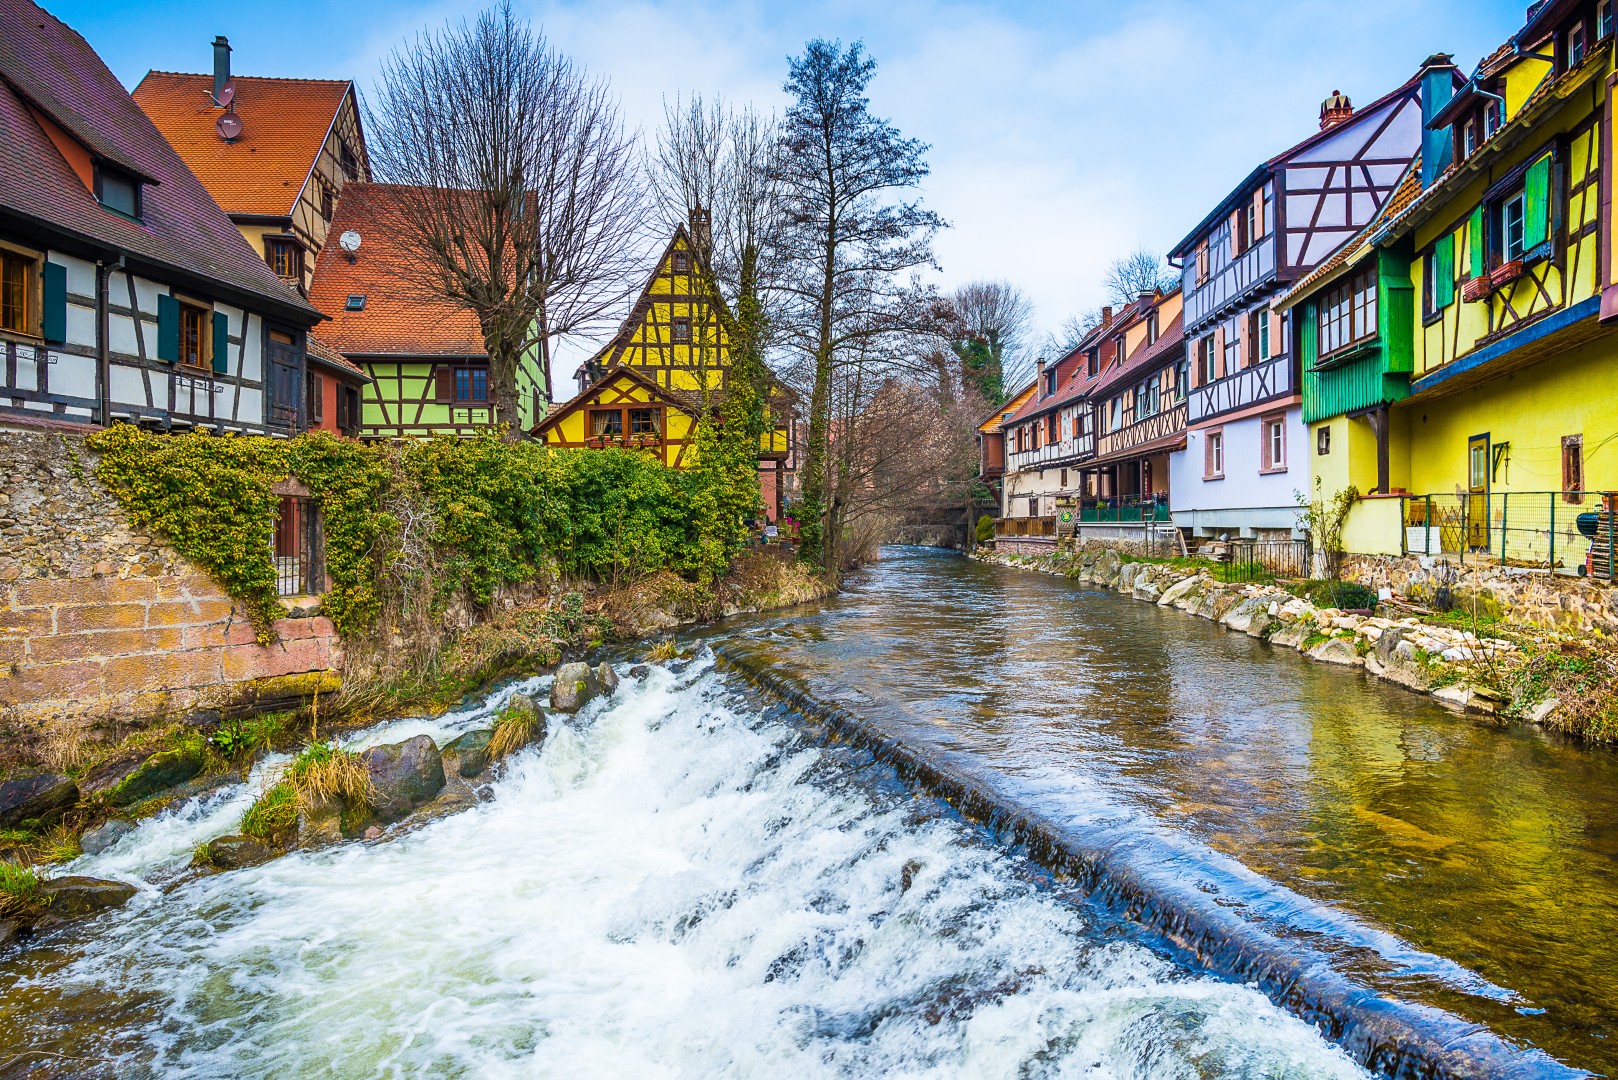 העיירה הצבעונית היפה (צילום: Shutterstock) (צילום: Shutterstock)